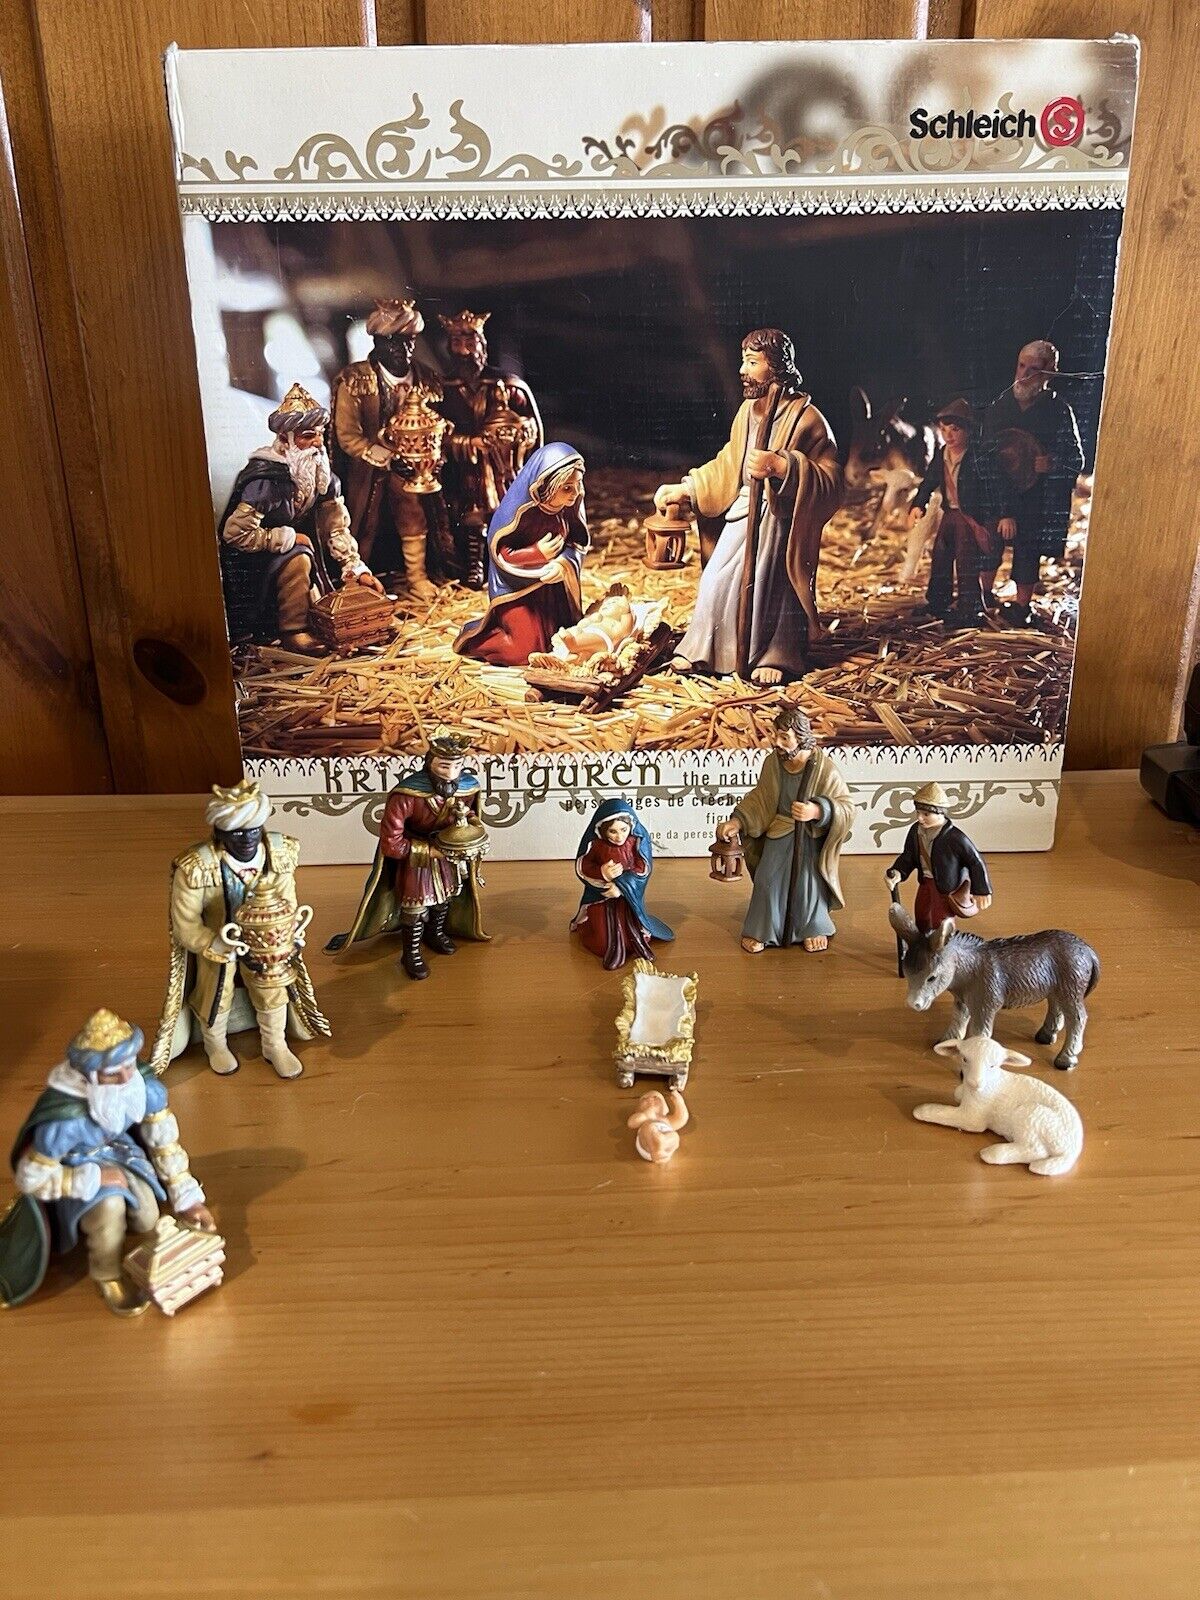 Schleich Krippefiguren 10 Piece Nativity Set Figurines Germany Includes Extras